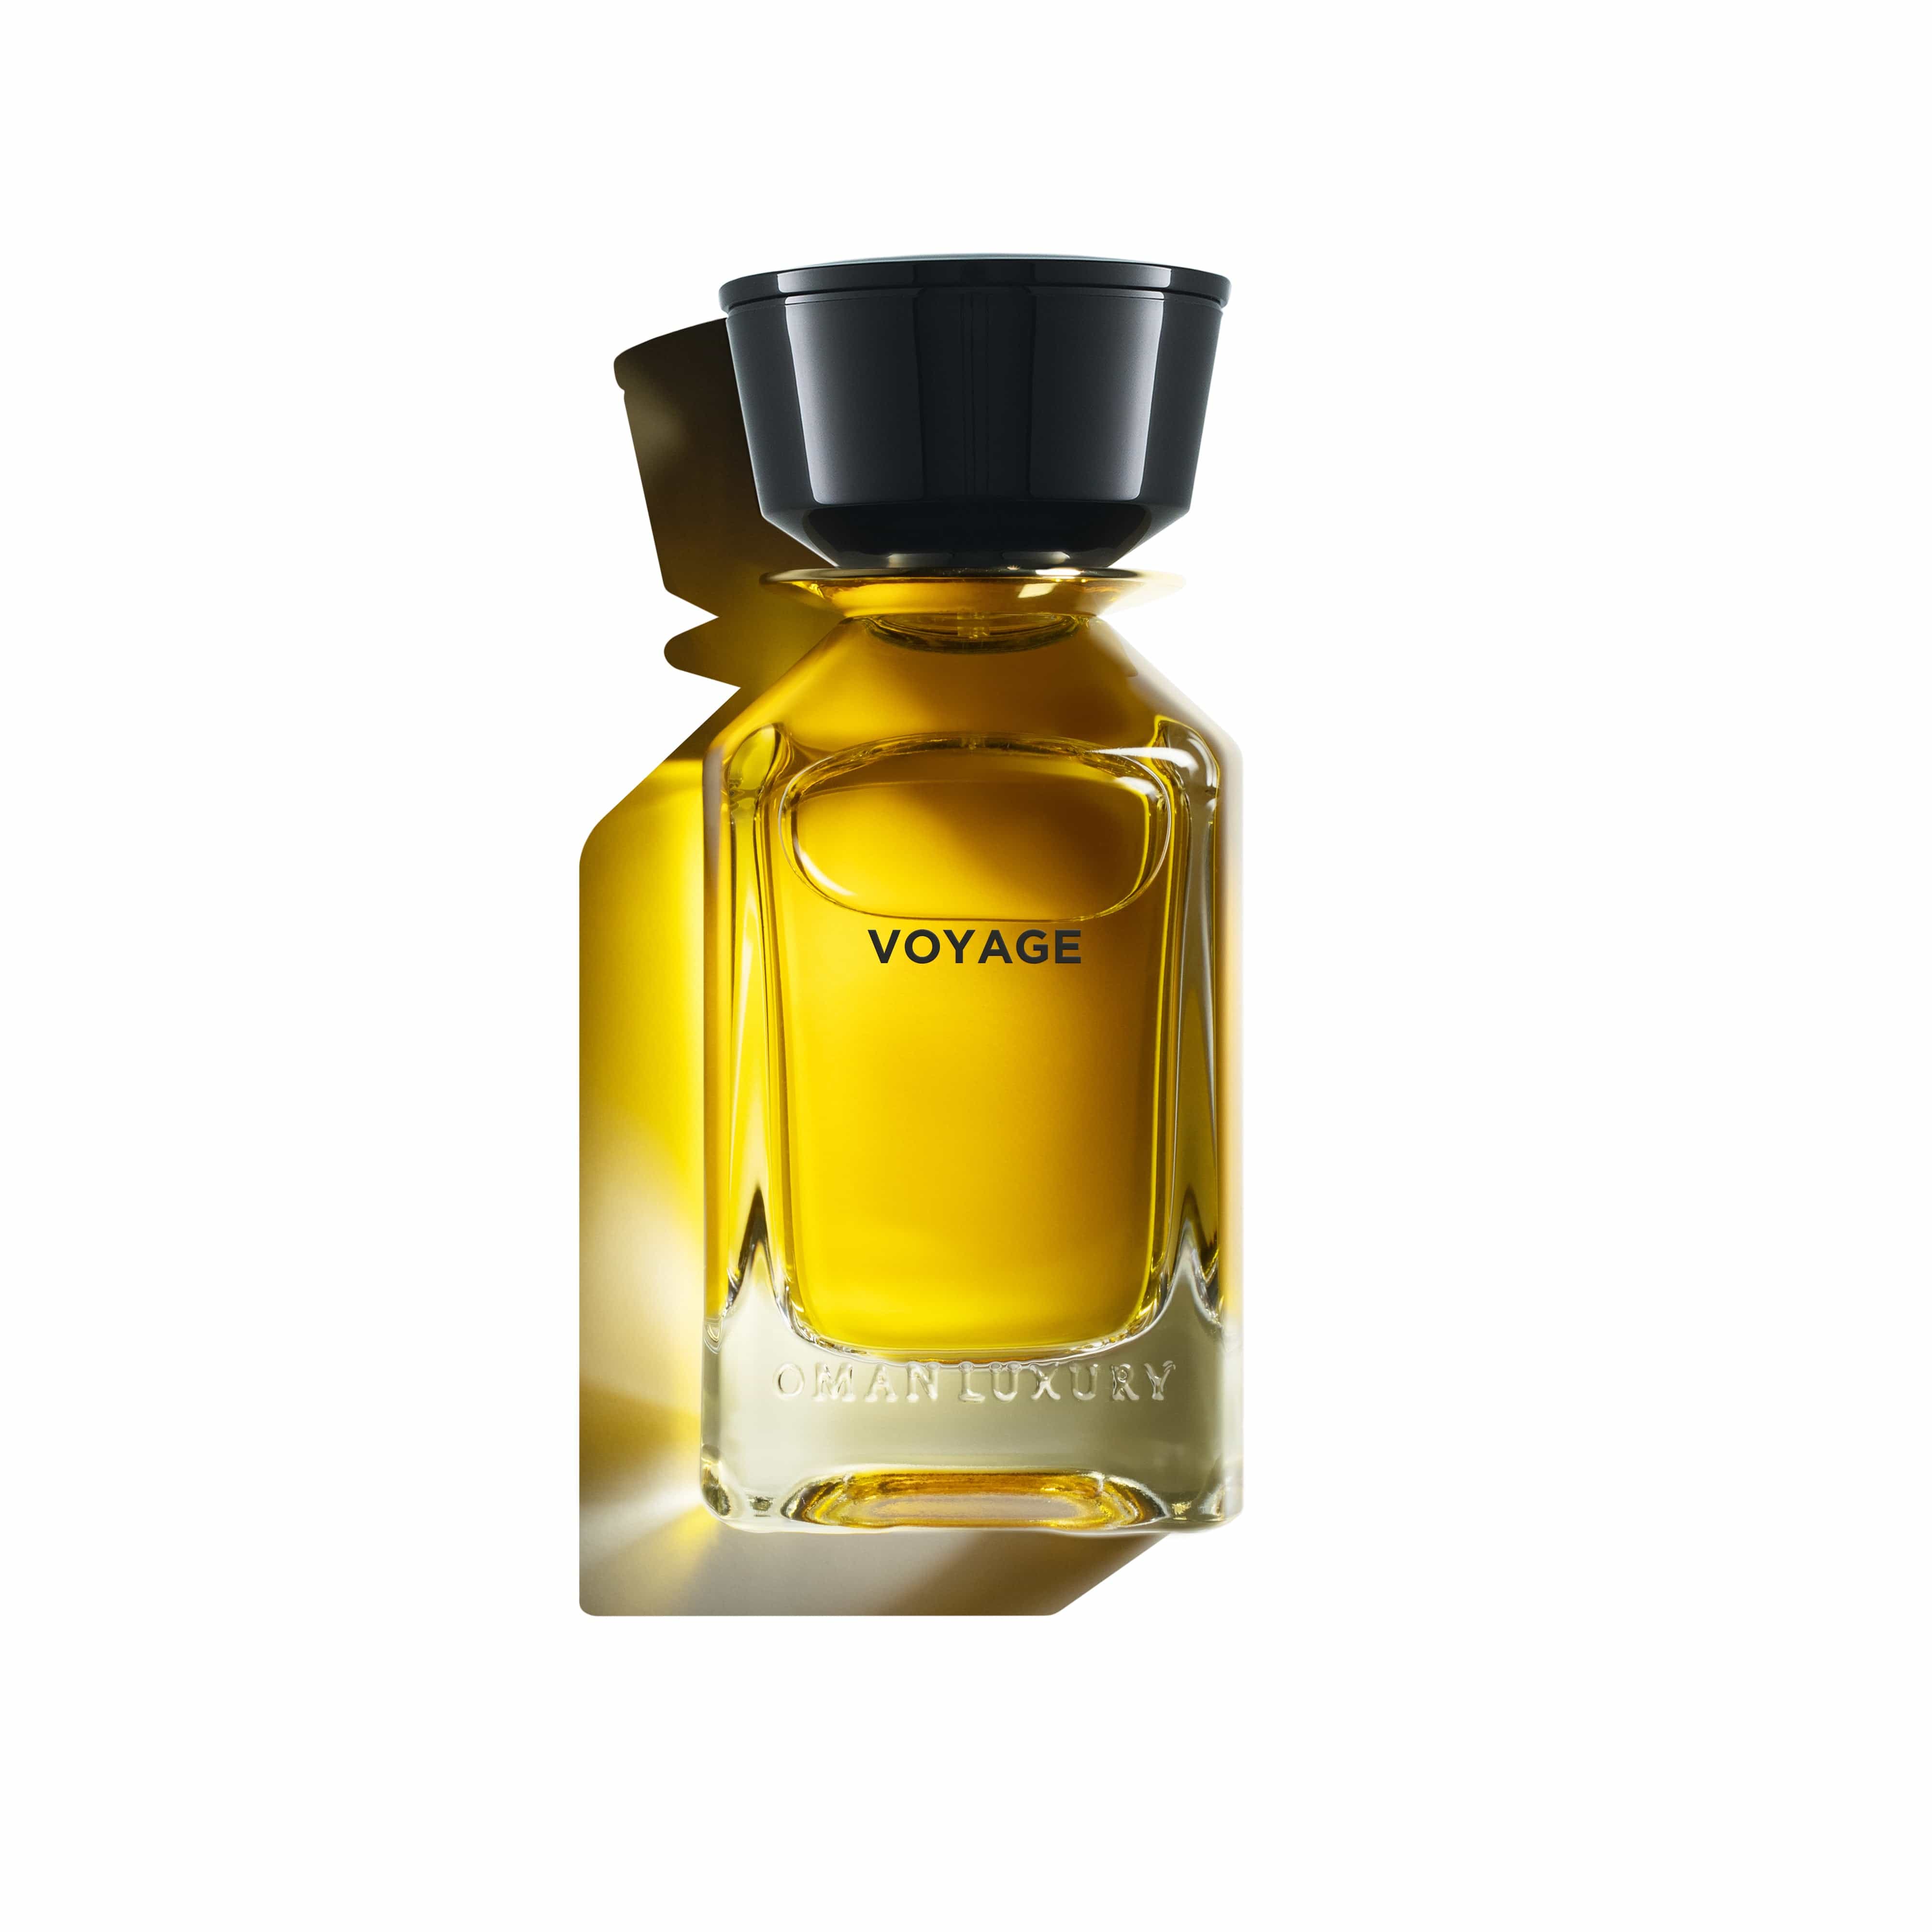 Voyage Oman Luxury Eau de Parfum